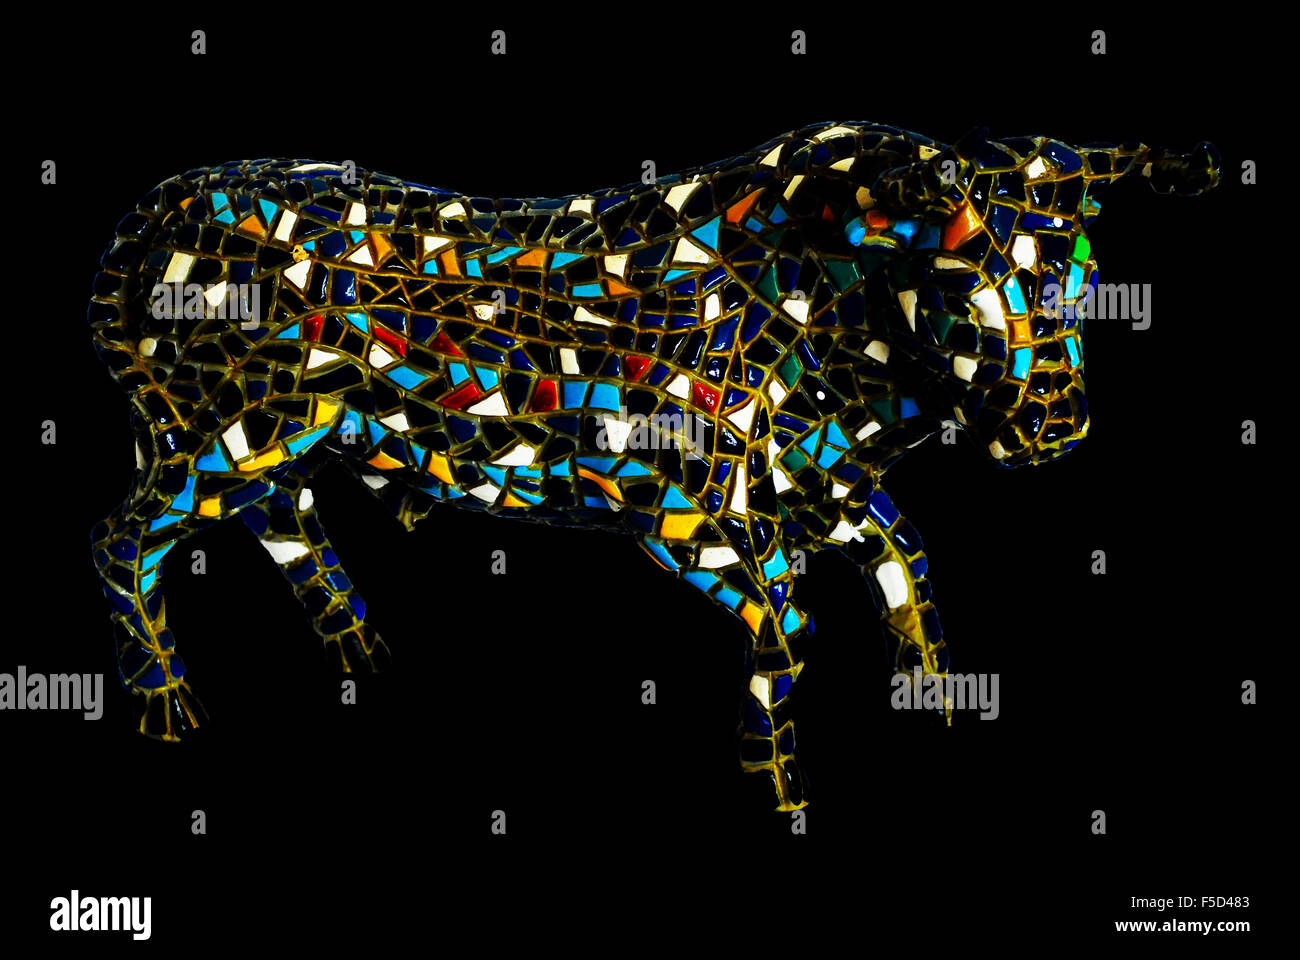 mozaic china bull Stock Photo